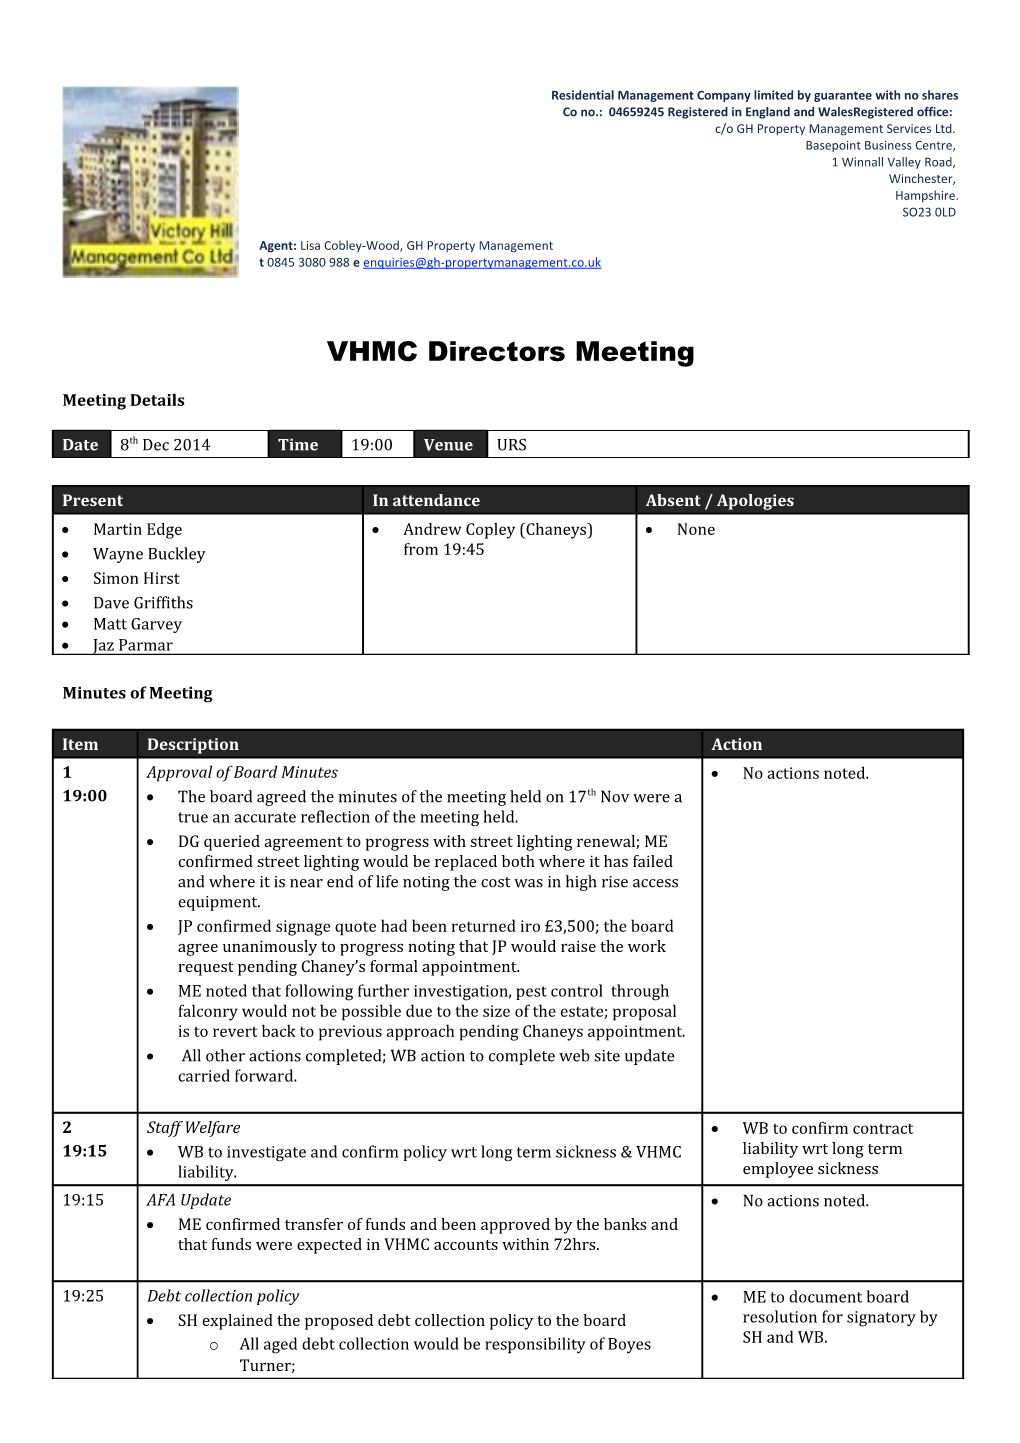 VHMC Directors Meeting